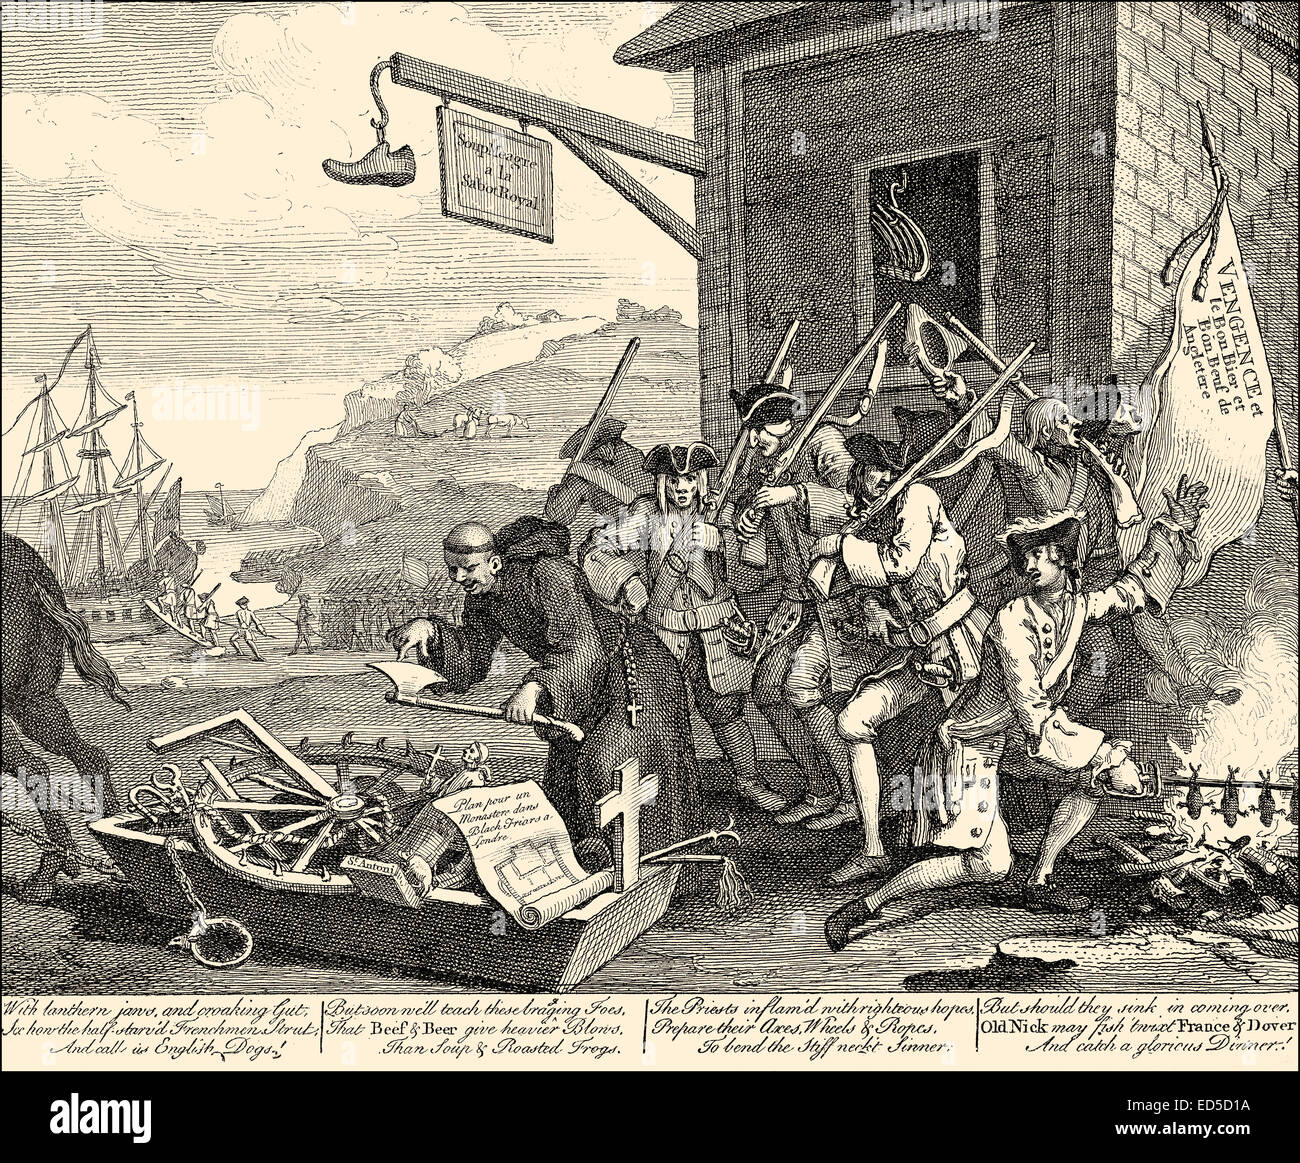 L'invasion, une satire sur la France, par William Hogarth, 1697 - 1764, un Anglais, peintre, graveur, image satirique, sociale Banque D'Images